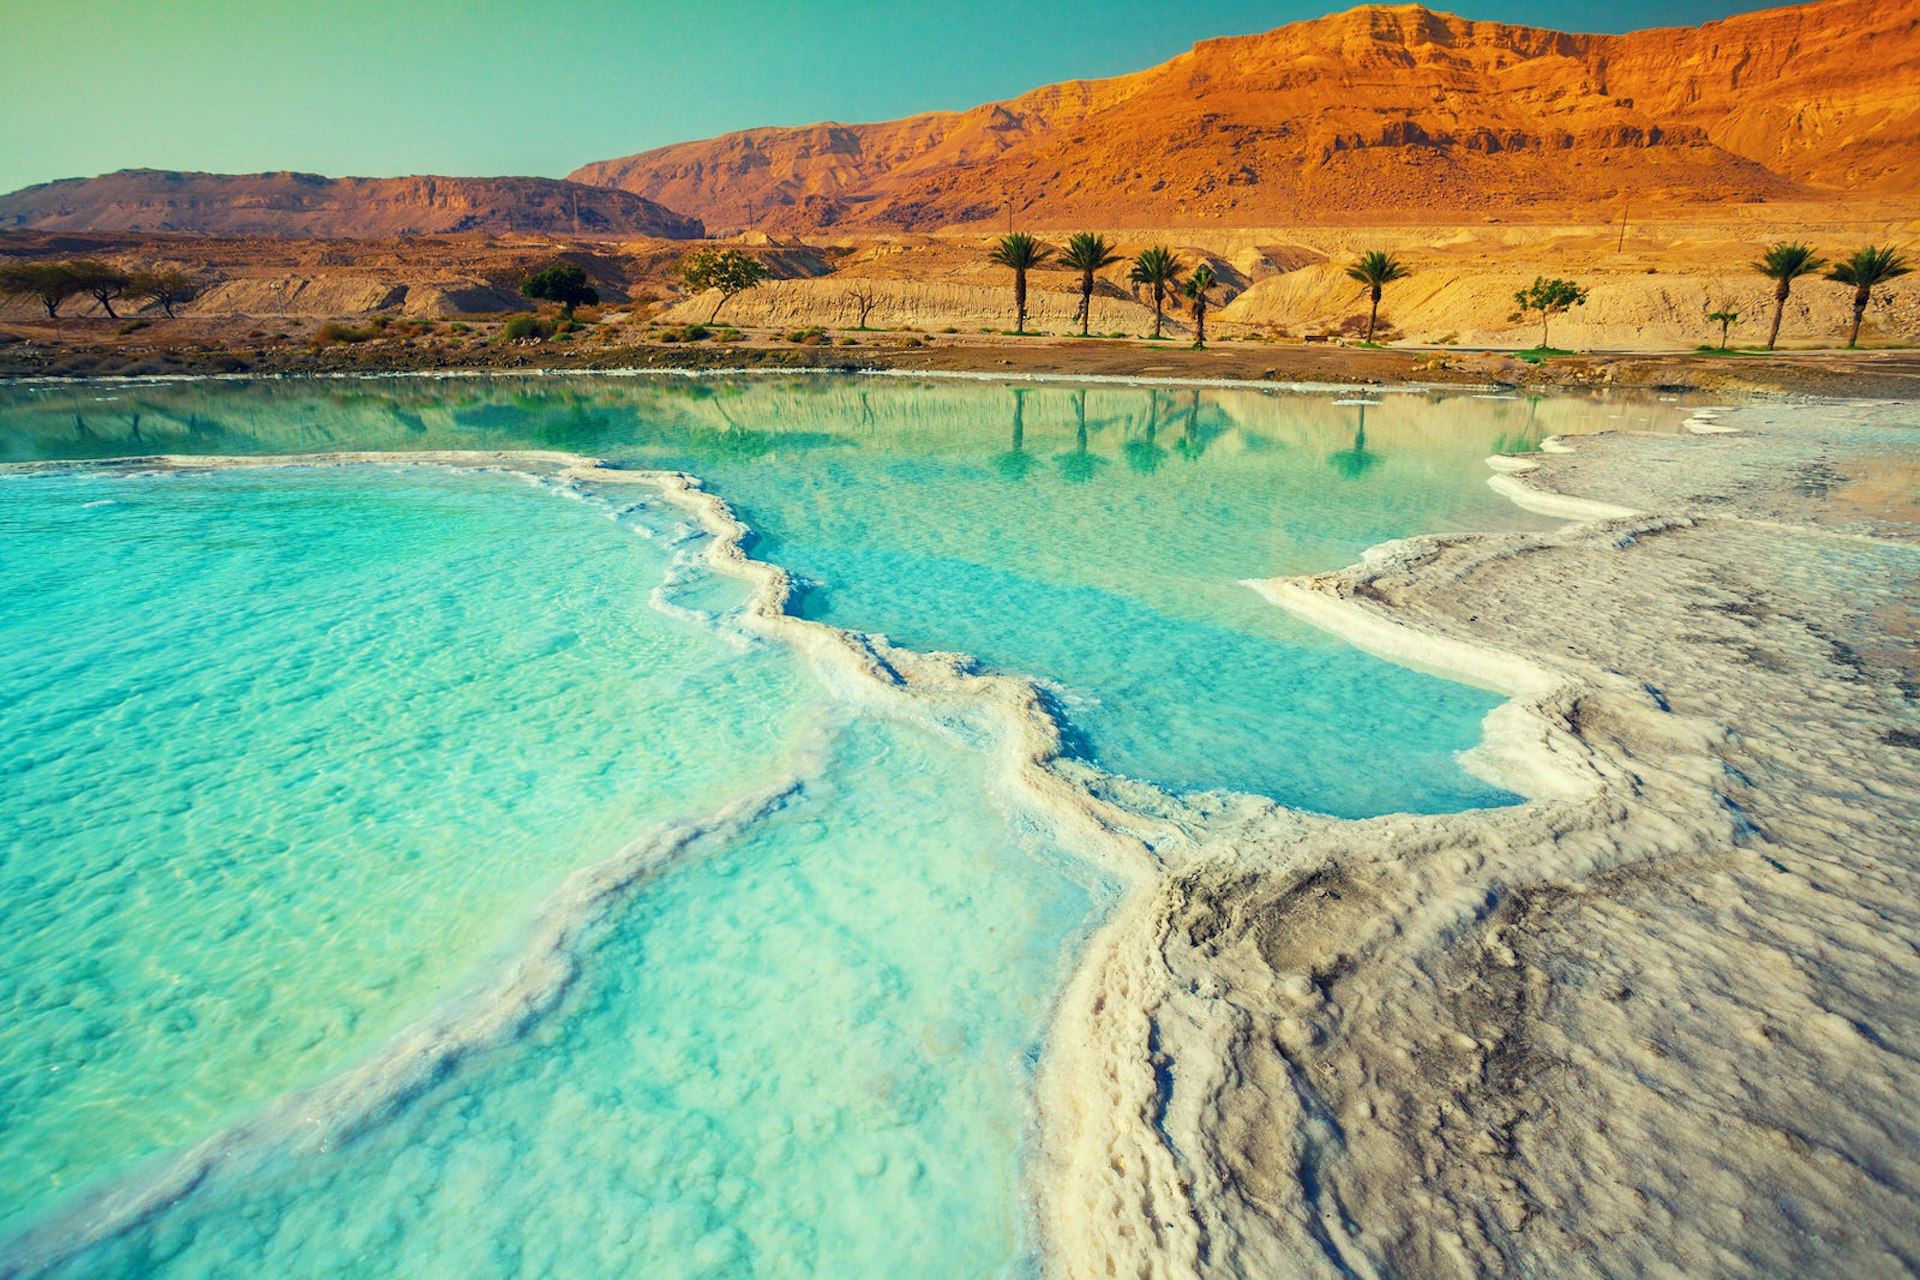 Salty shore of the Dead Sea, Ein Bokek, Israel. Image by vvvita / Shutterstock